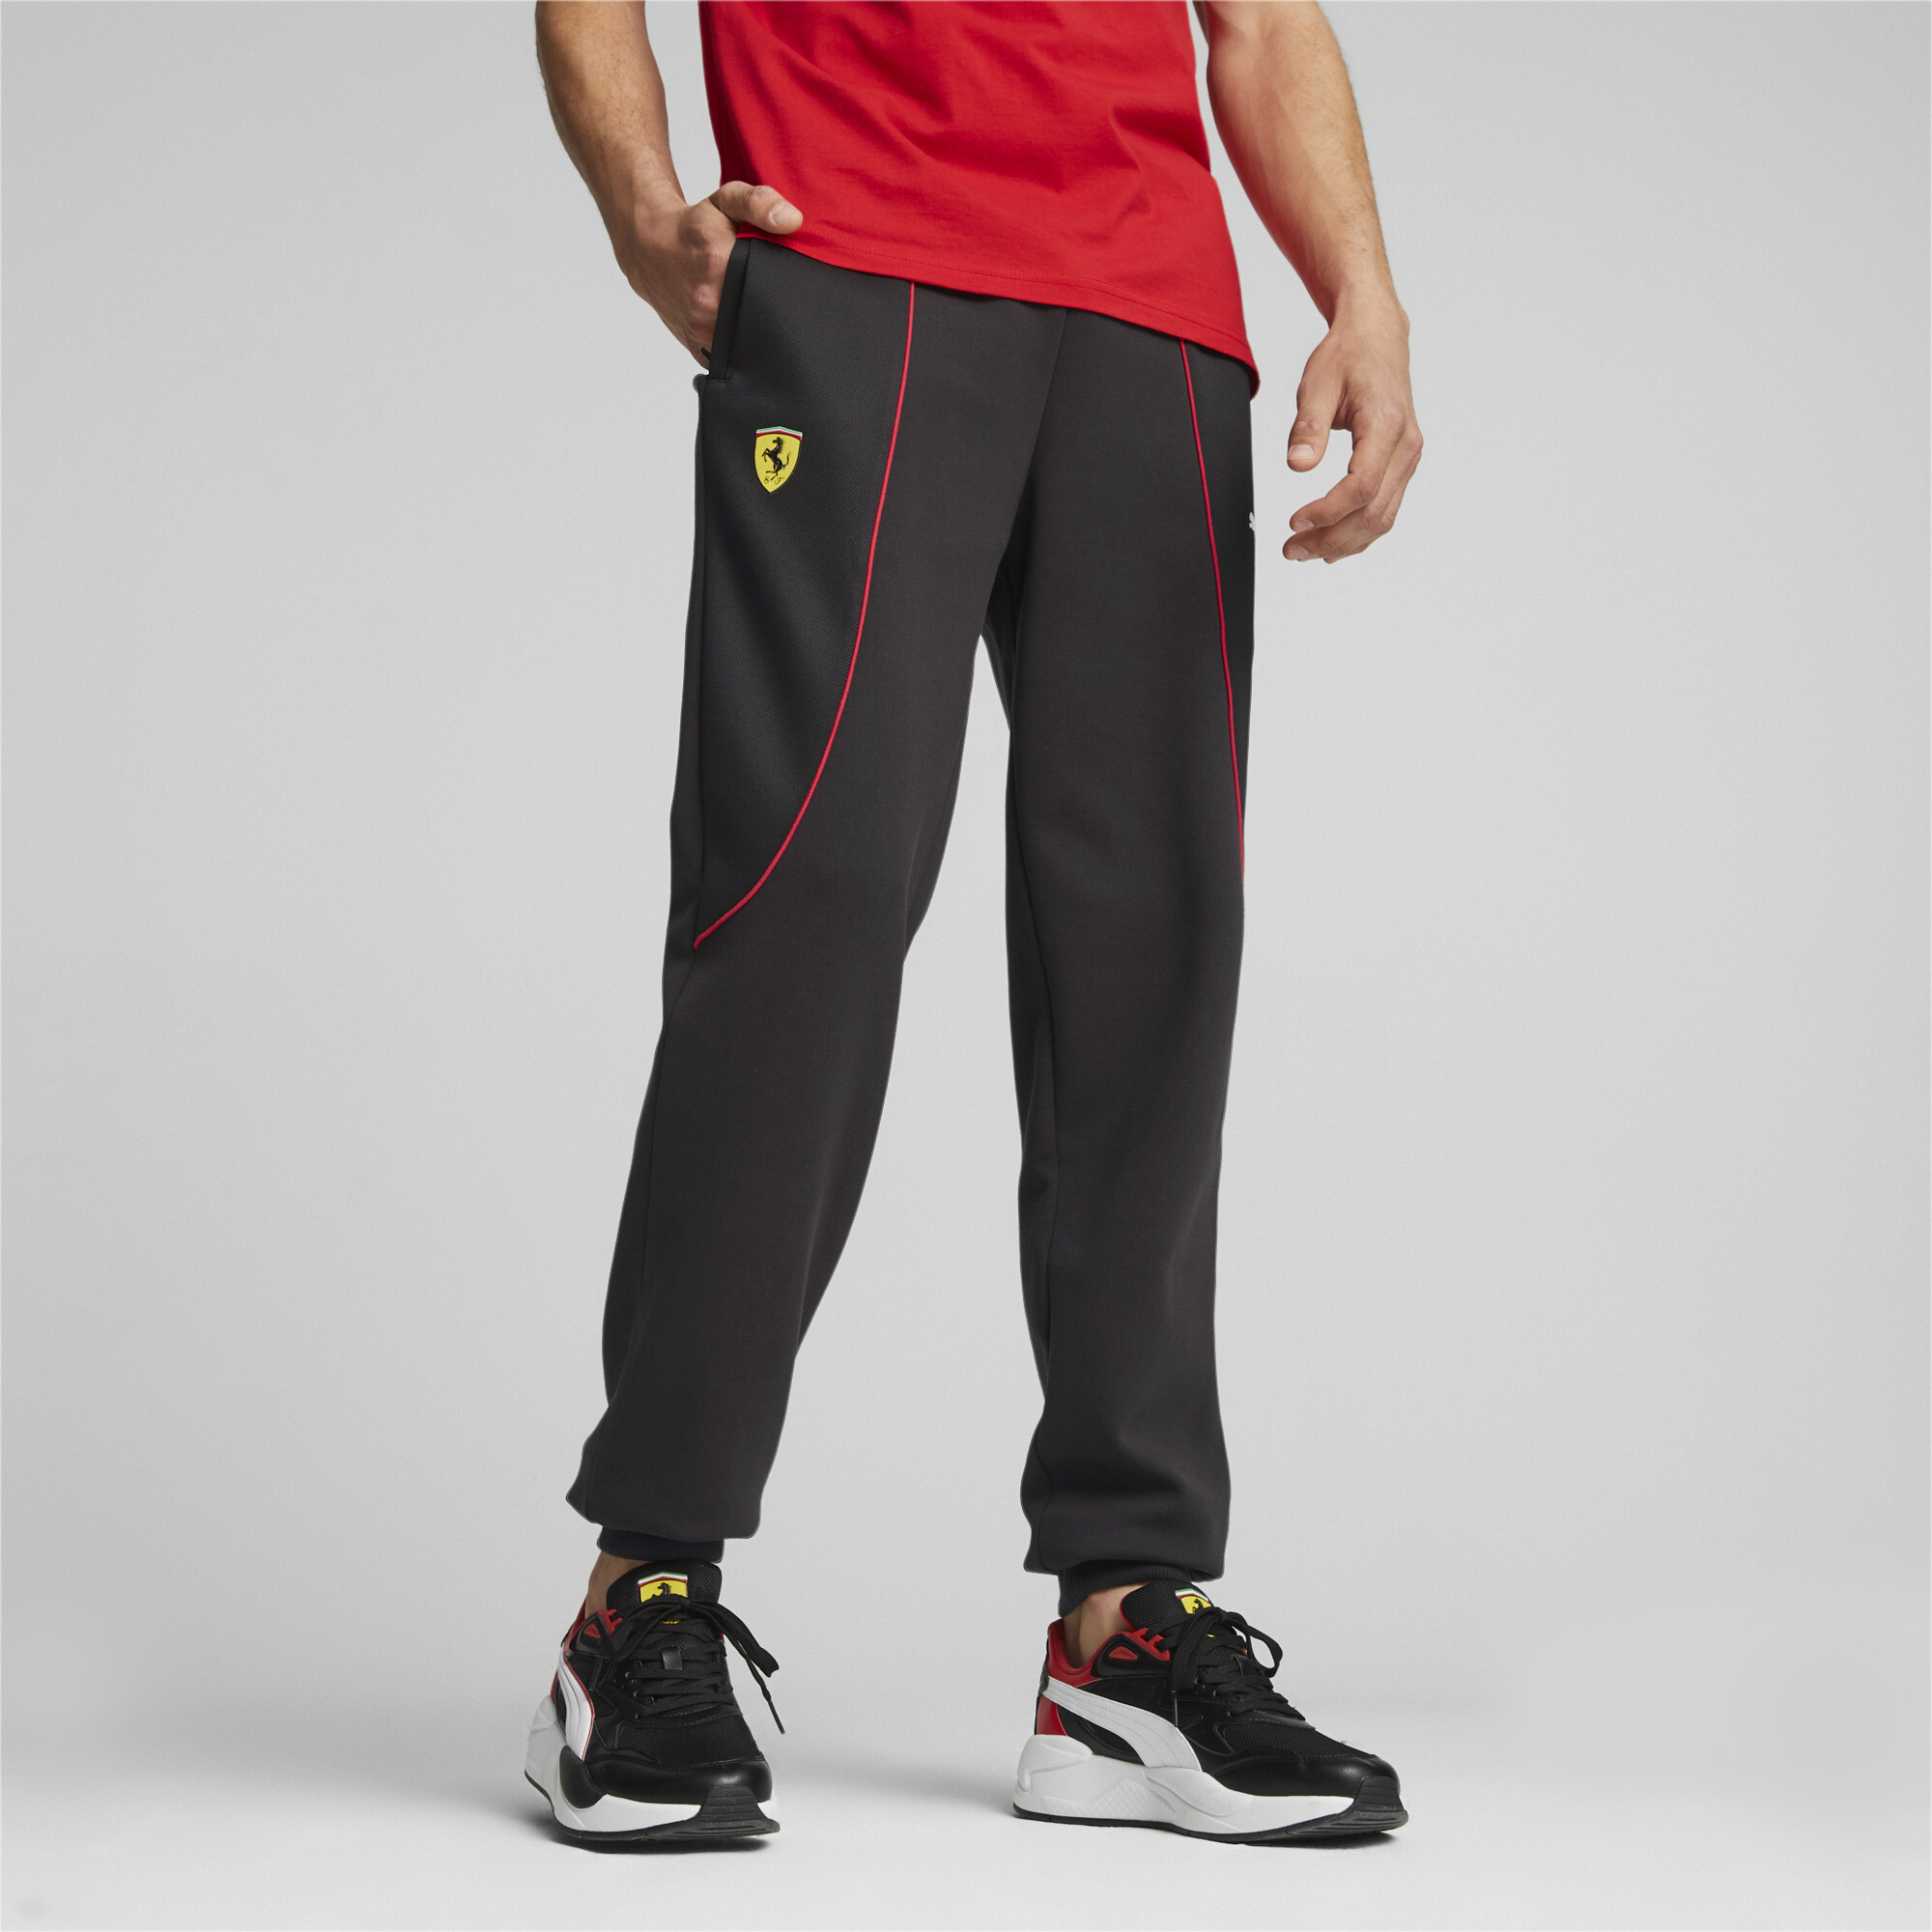 PUMA Pantalones deportivos Scuderia Ferrari para hombre